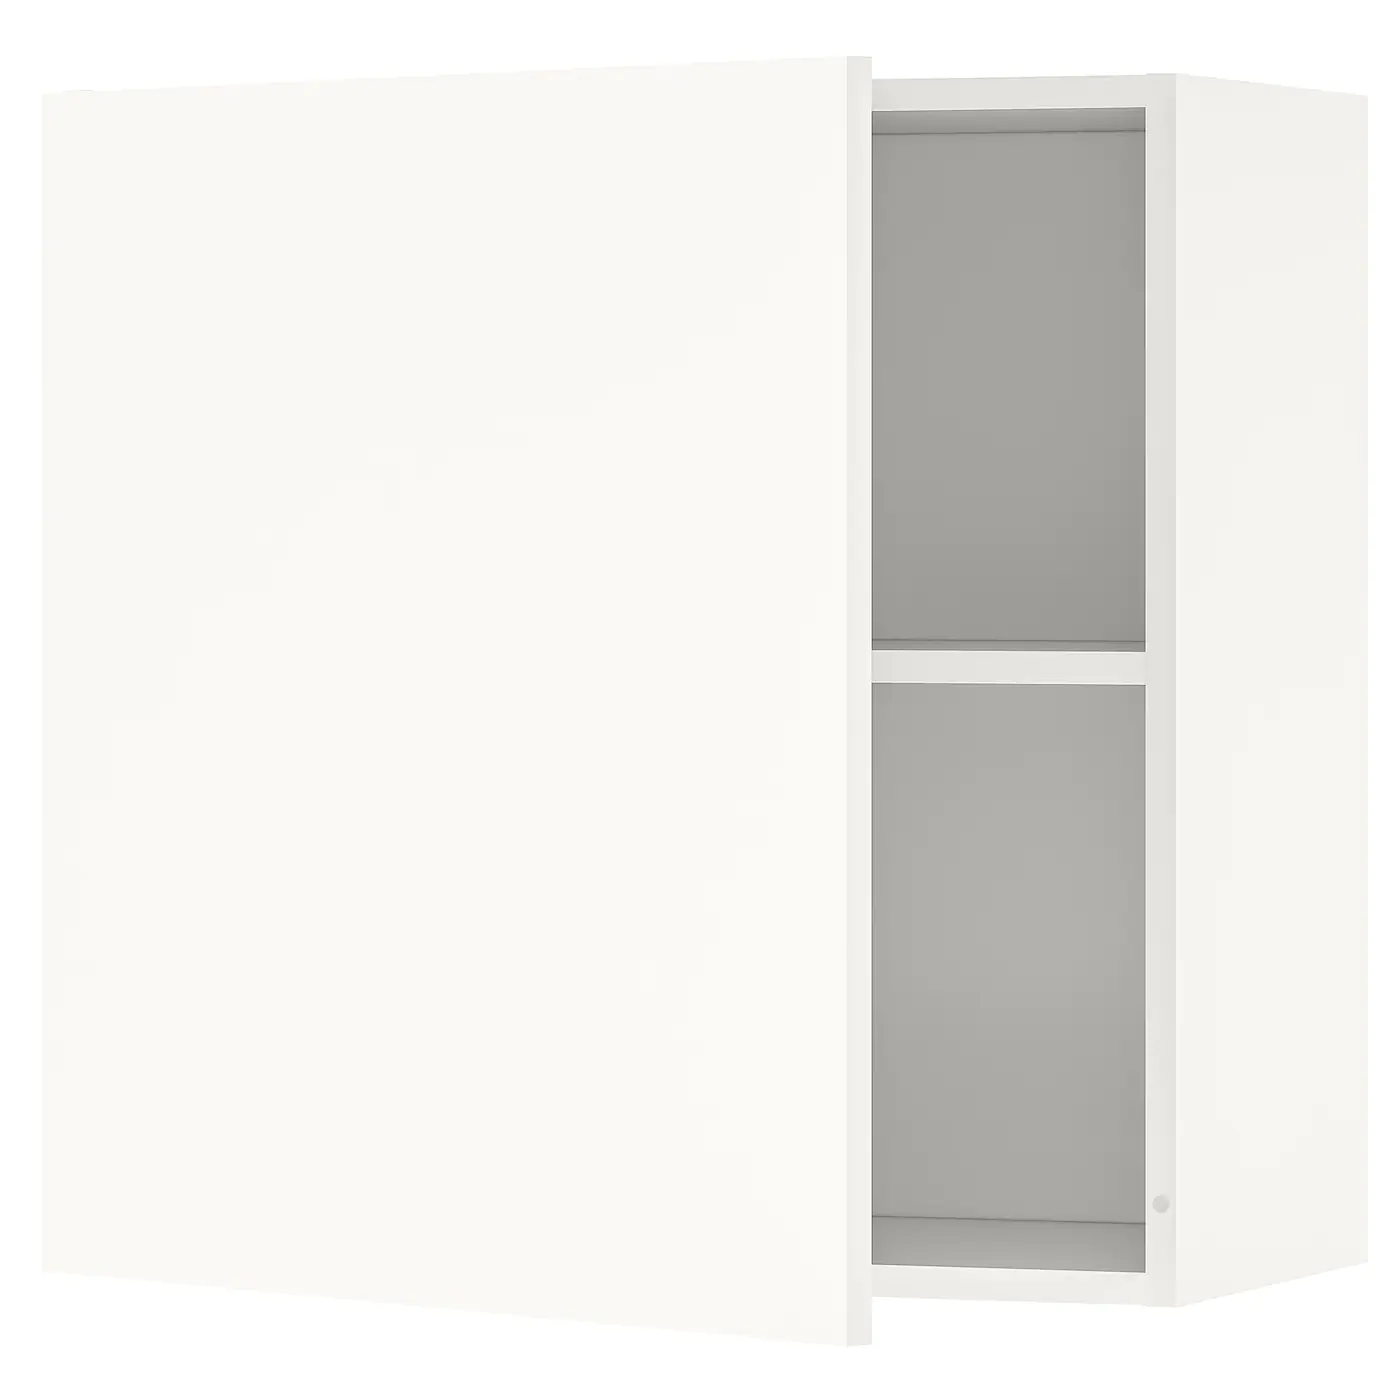 knoxhult-armario-pared-con-puerta-blanco_0630676_pe694837_s5.jpg